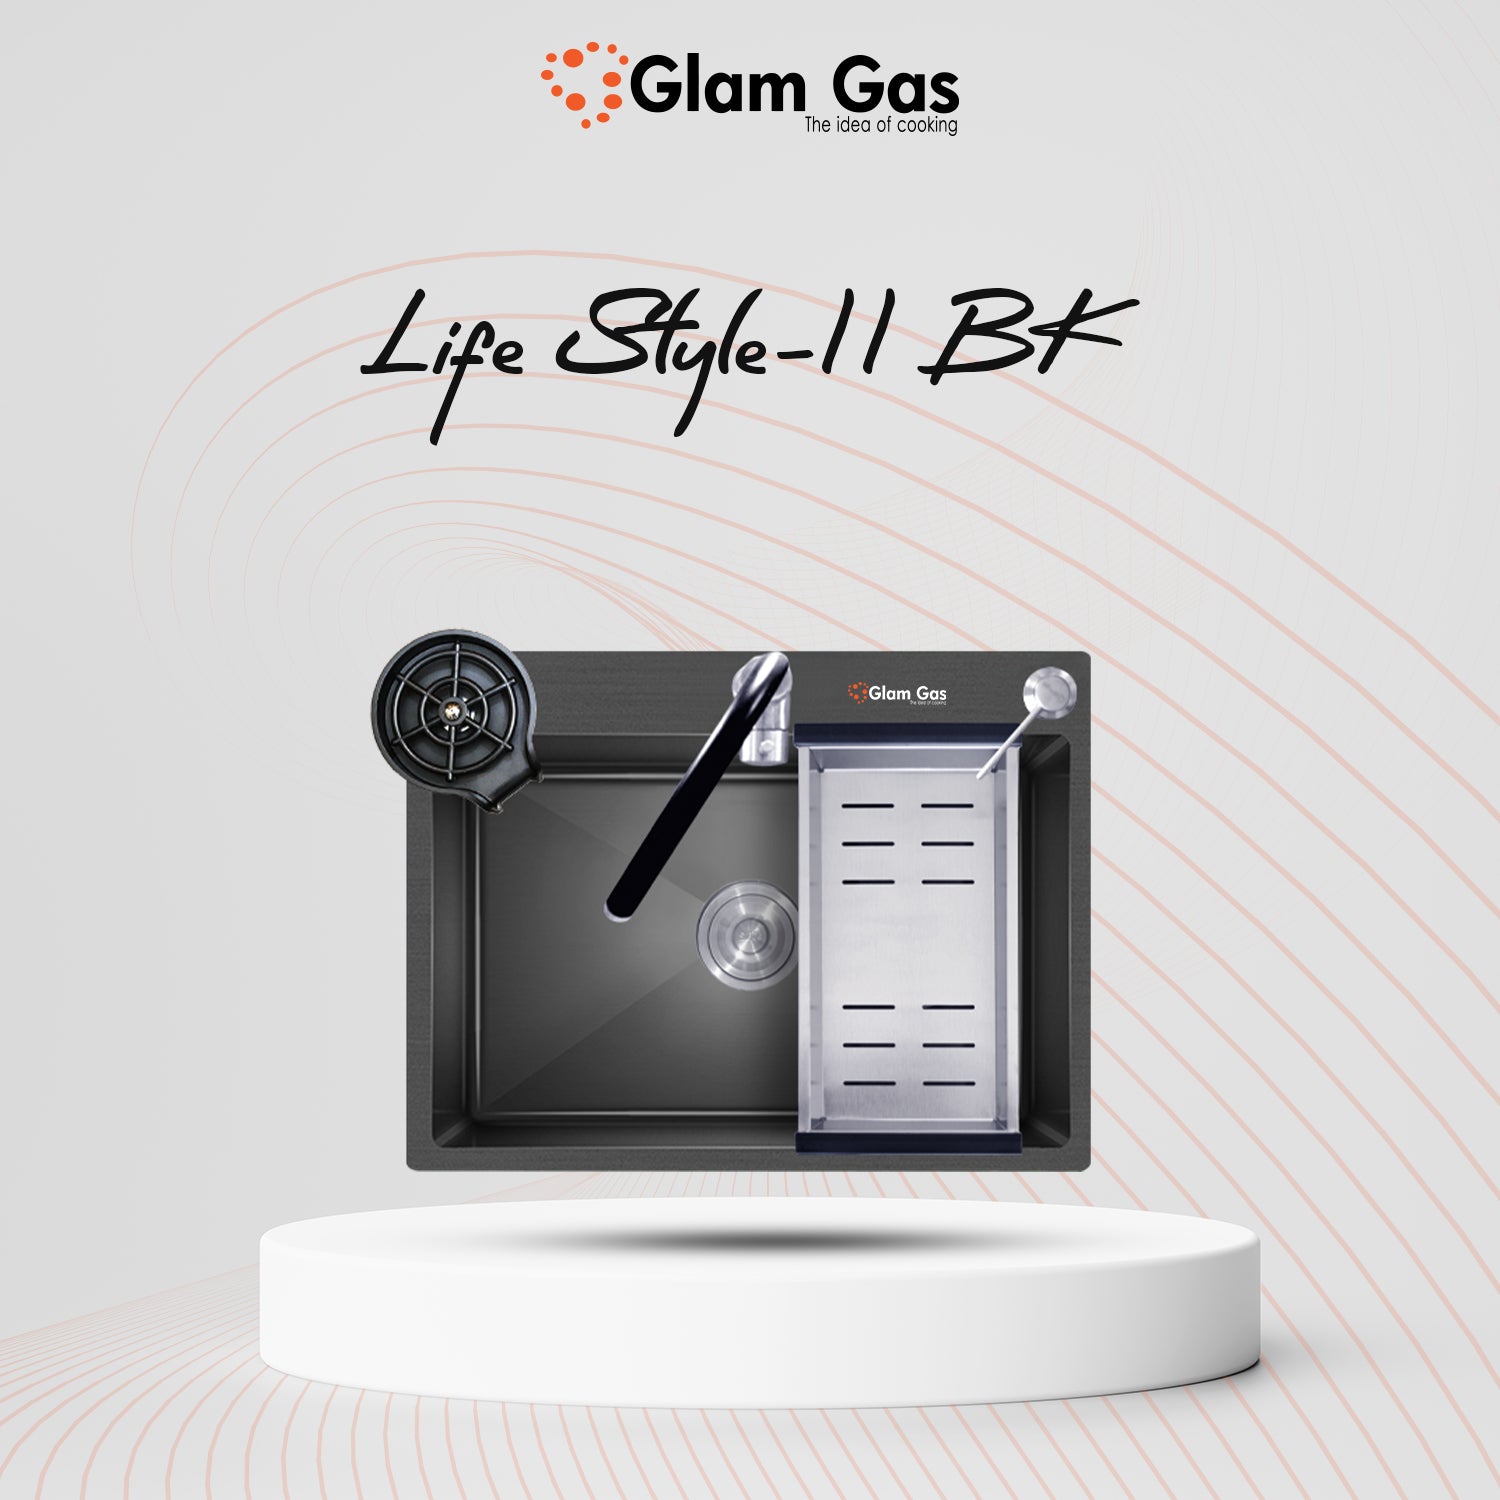 Glam Gas Sink Lifestyle 11 BK | Kitchen Sink Price In Pakistan Buy Now